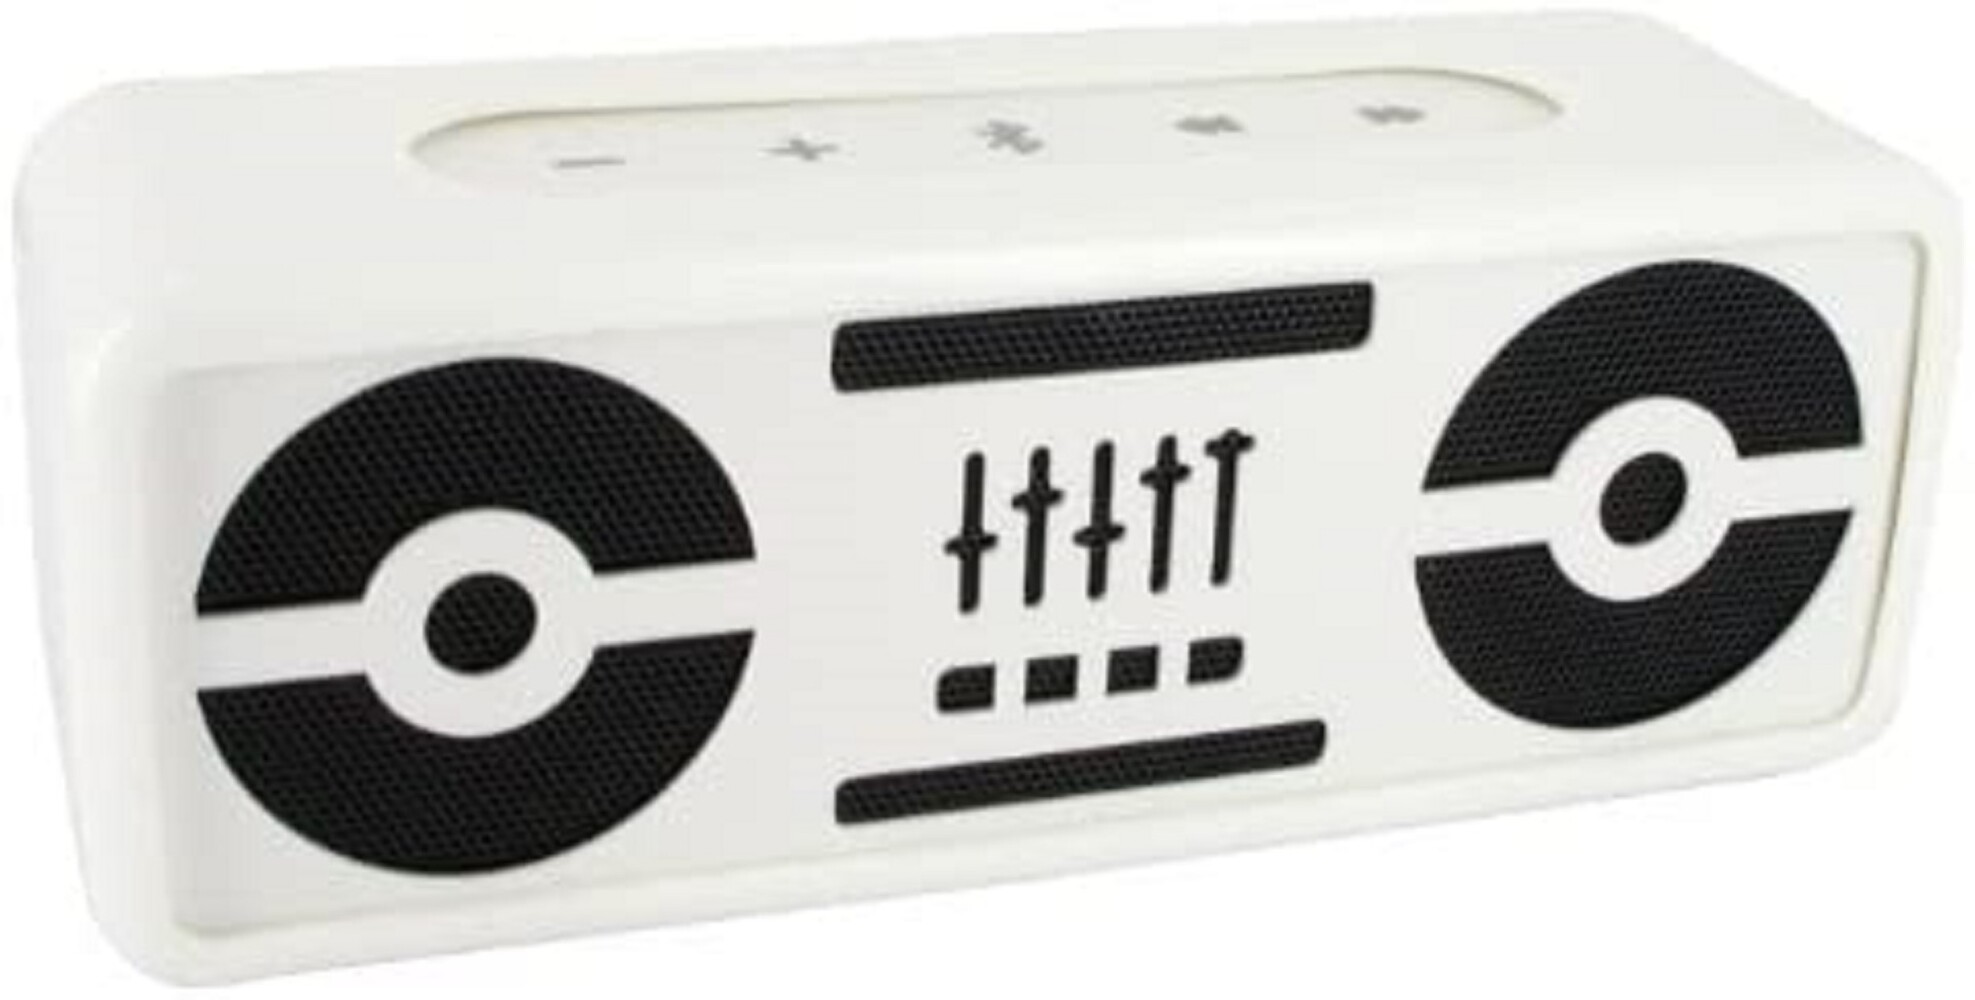 Hochwertiger Mini Stereo Lautsprecher von BeeWi in Weiß für ein beeindruckendes Hörerlebnis